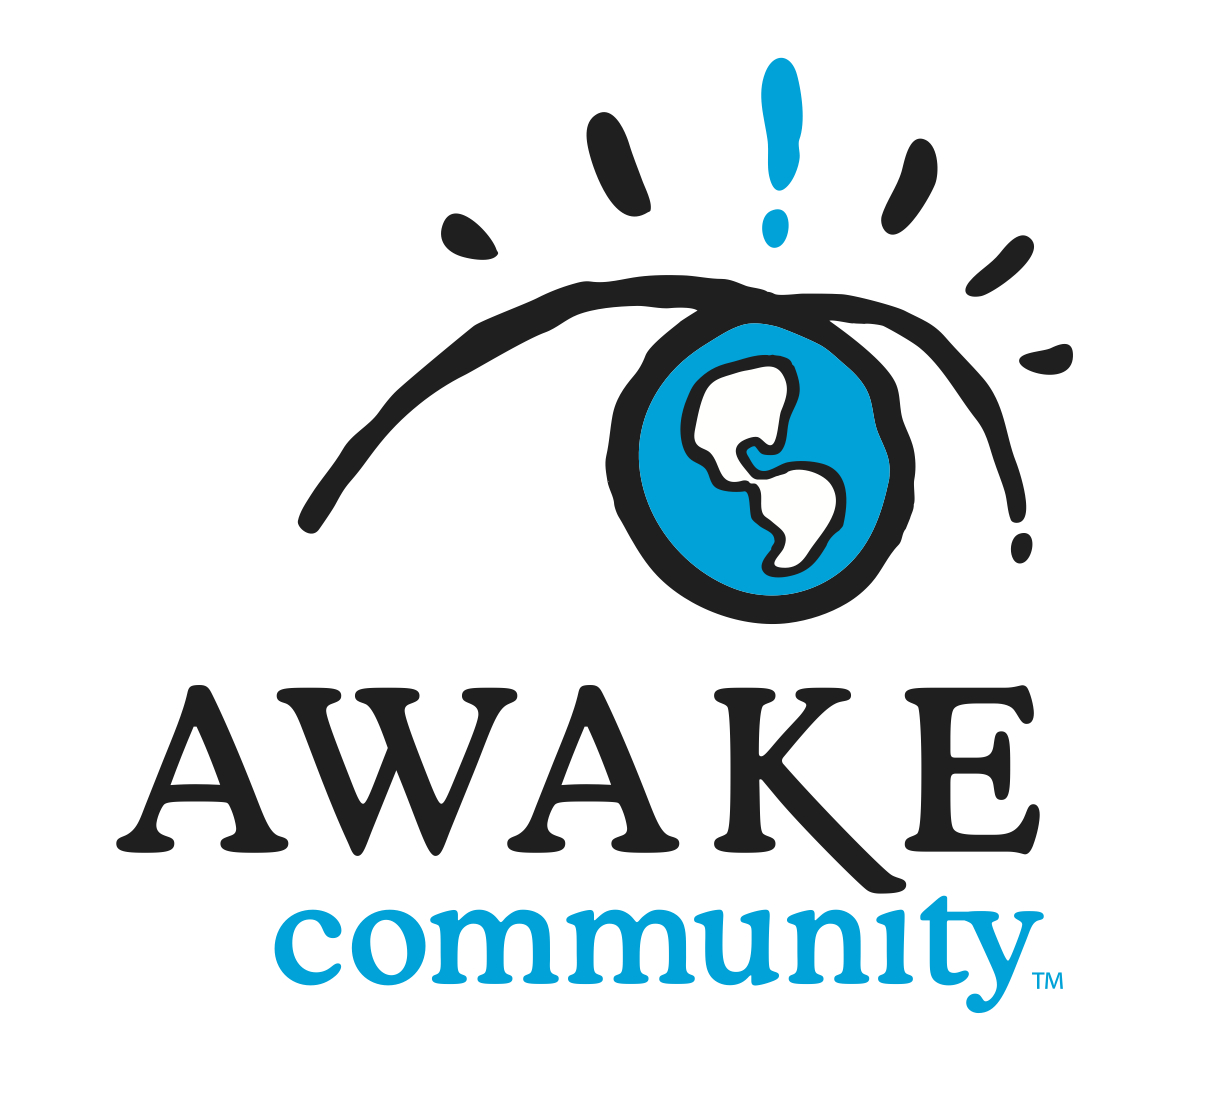 AWAKE Community